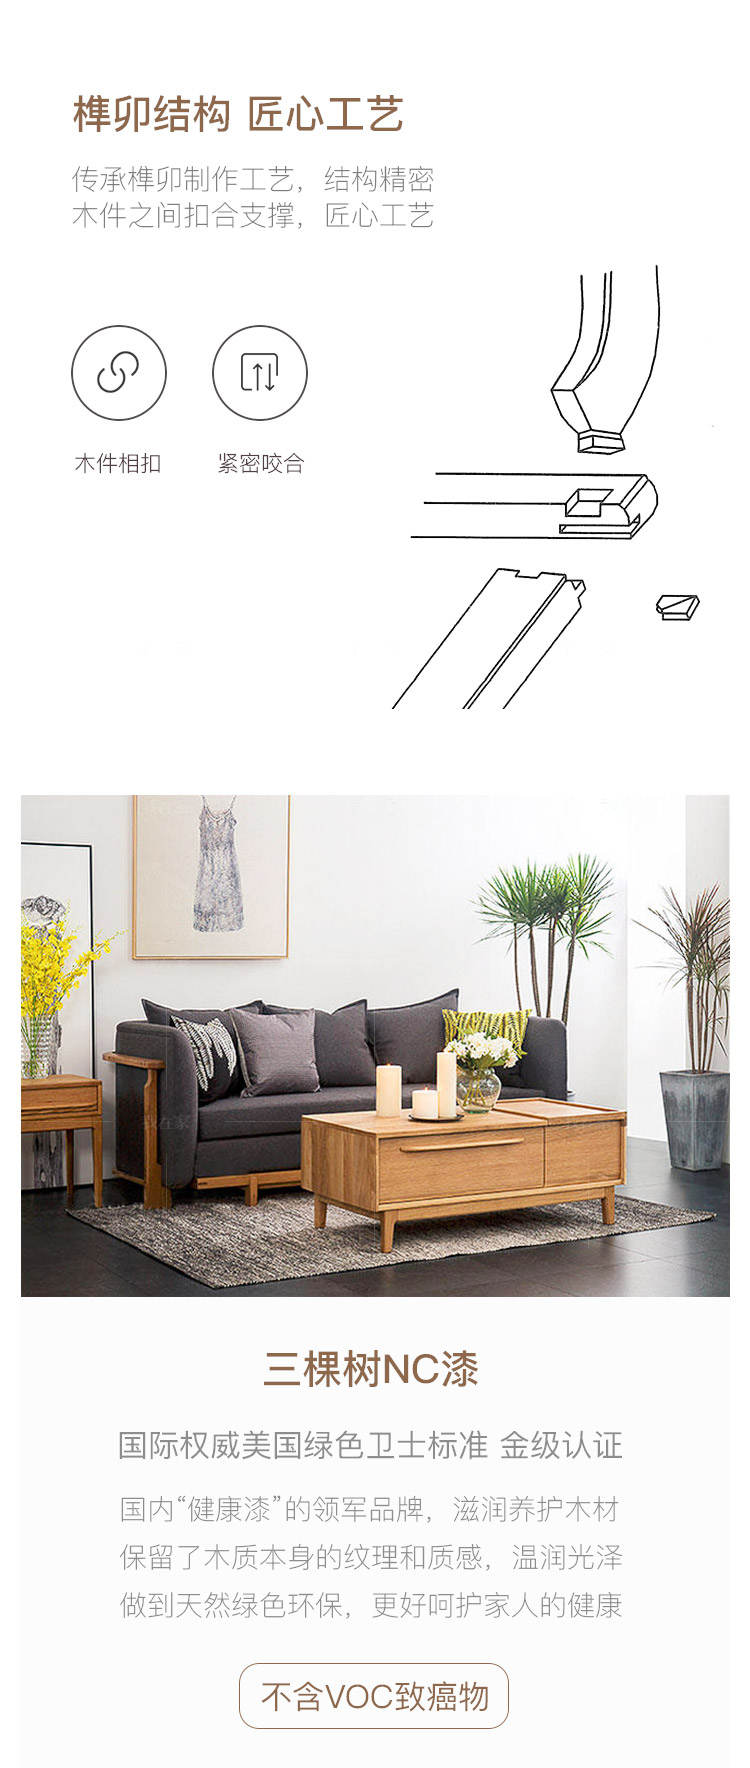 原木北欧风格言稀沙发床(样品特惠)的家具详细介绍